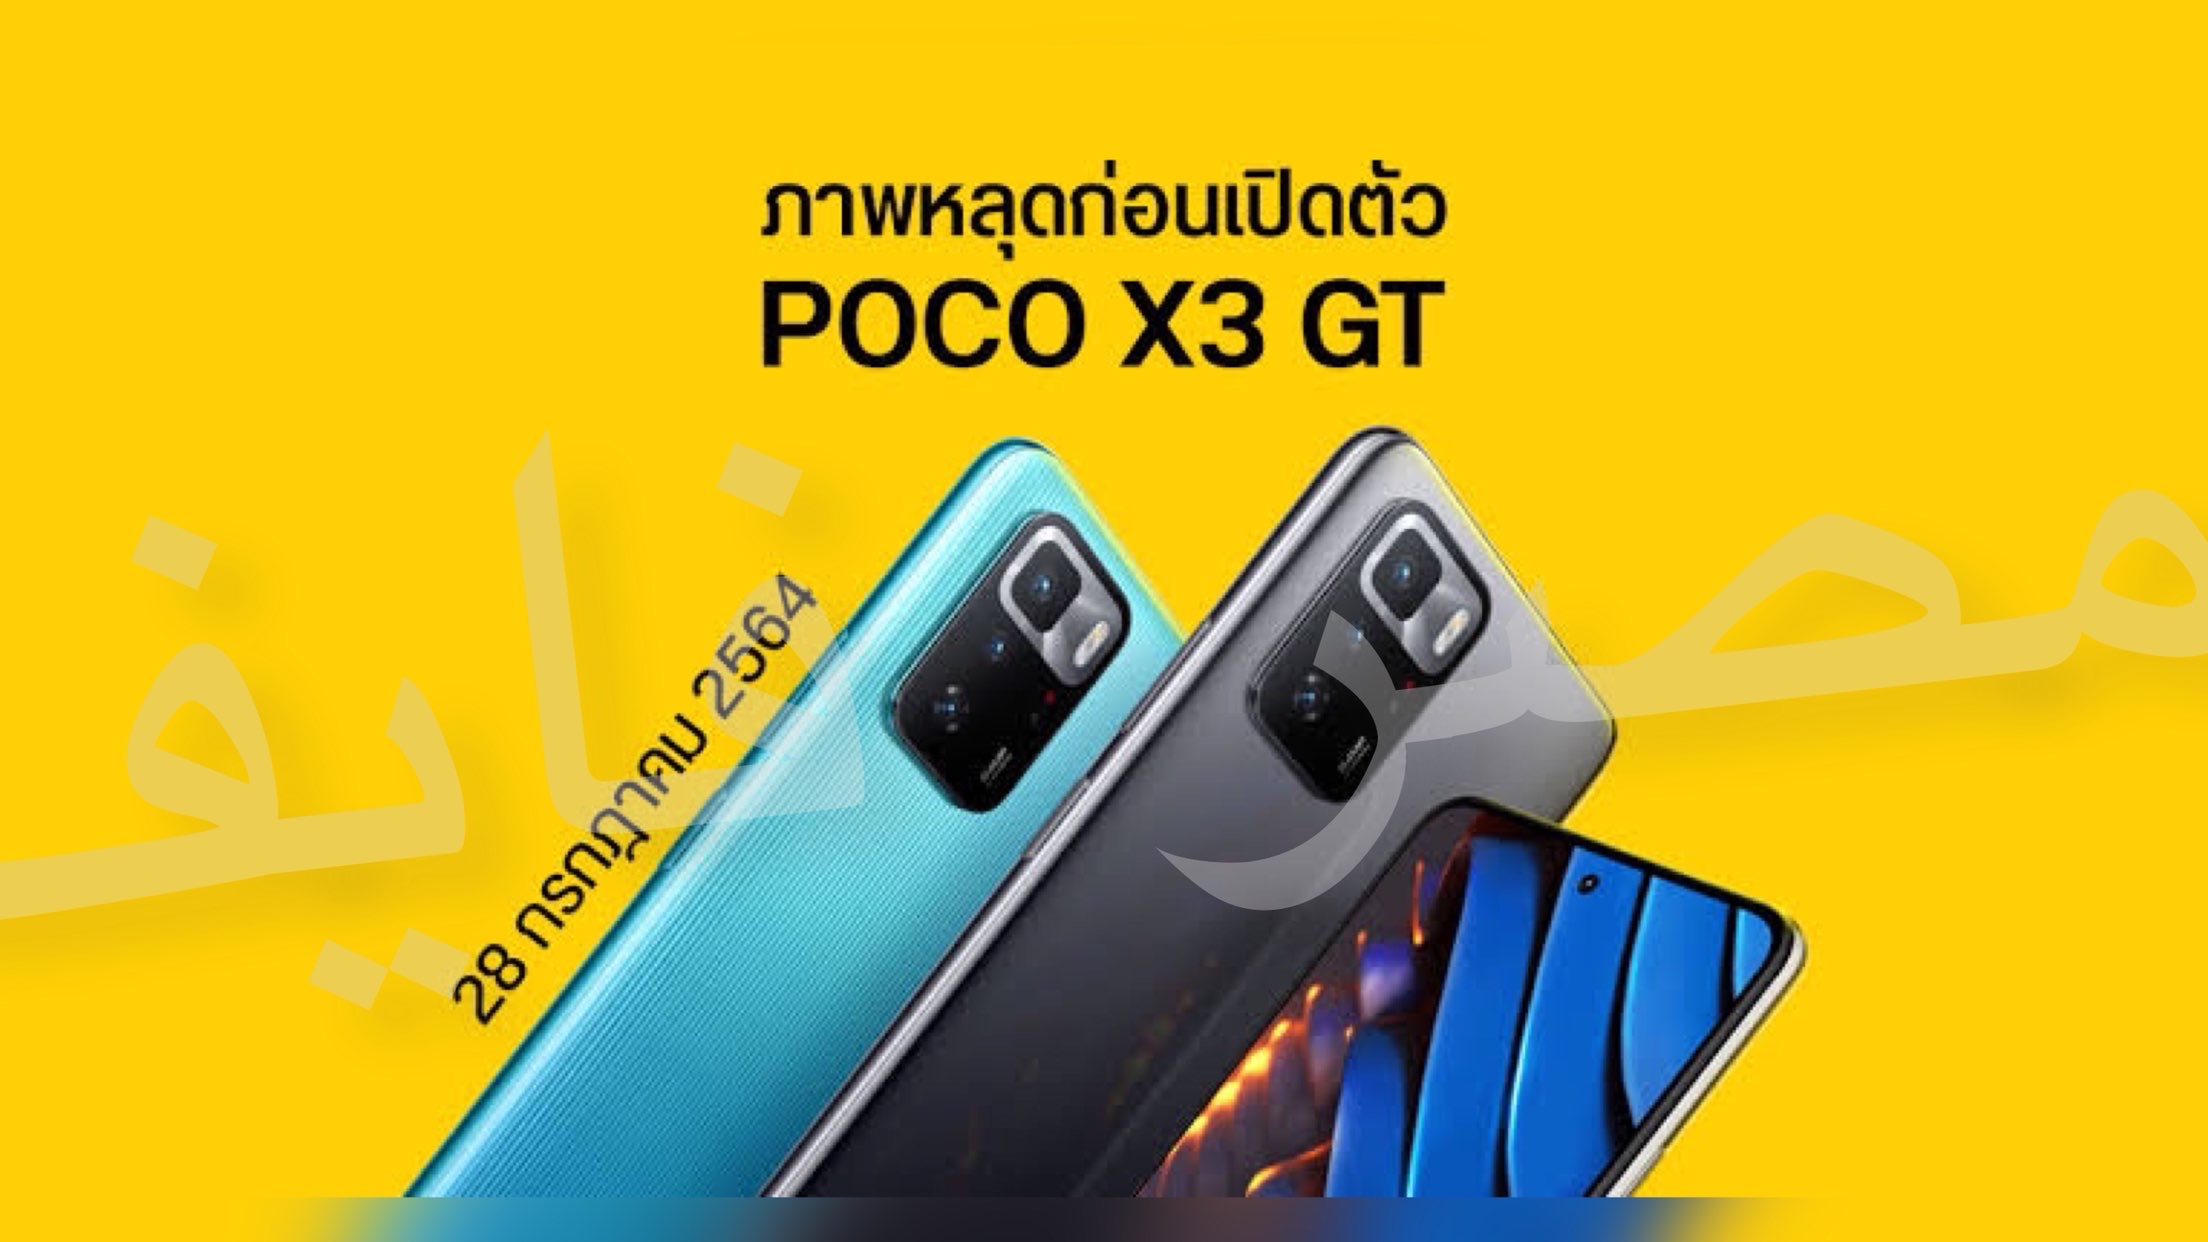 أسعار ومواصفات Poco X3 gt الهاتف الجديد الذي ابهر العالم